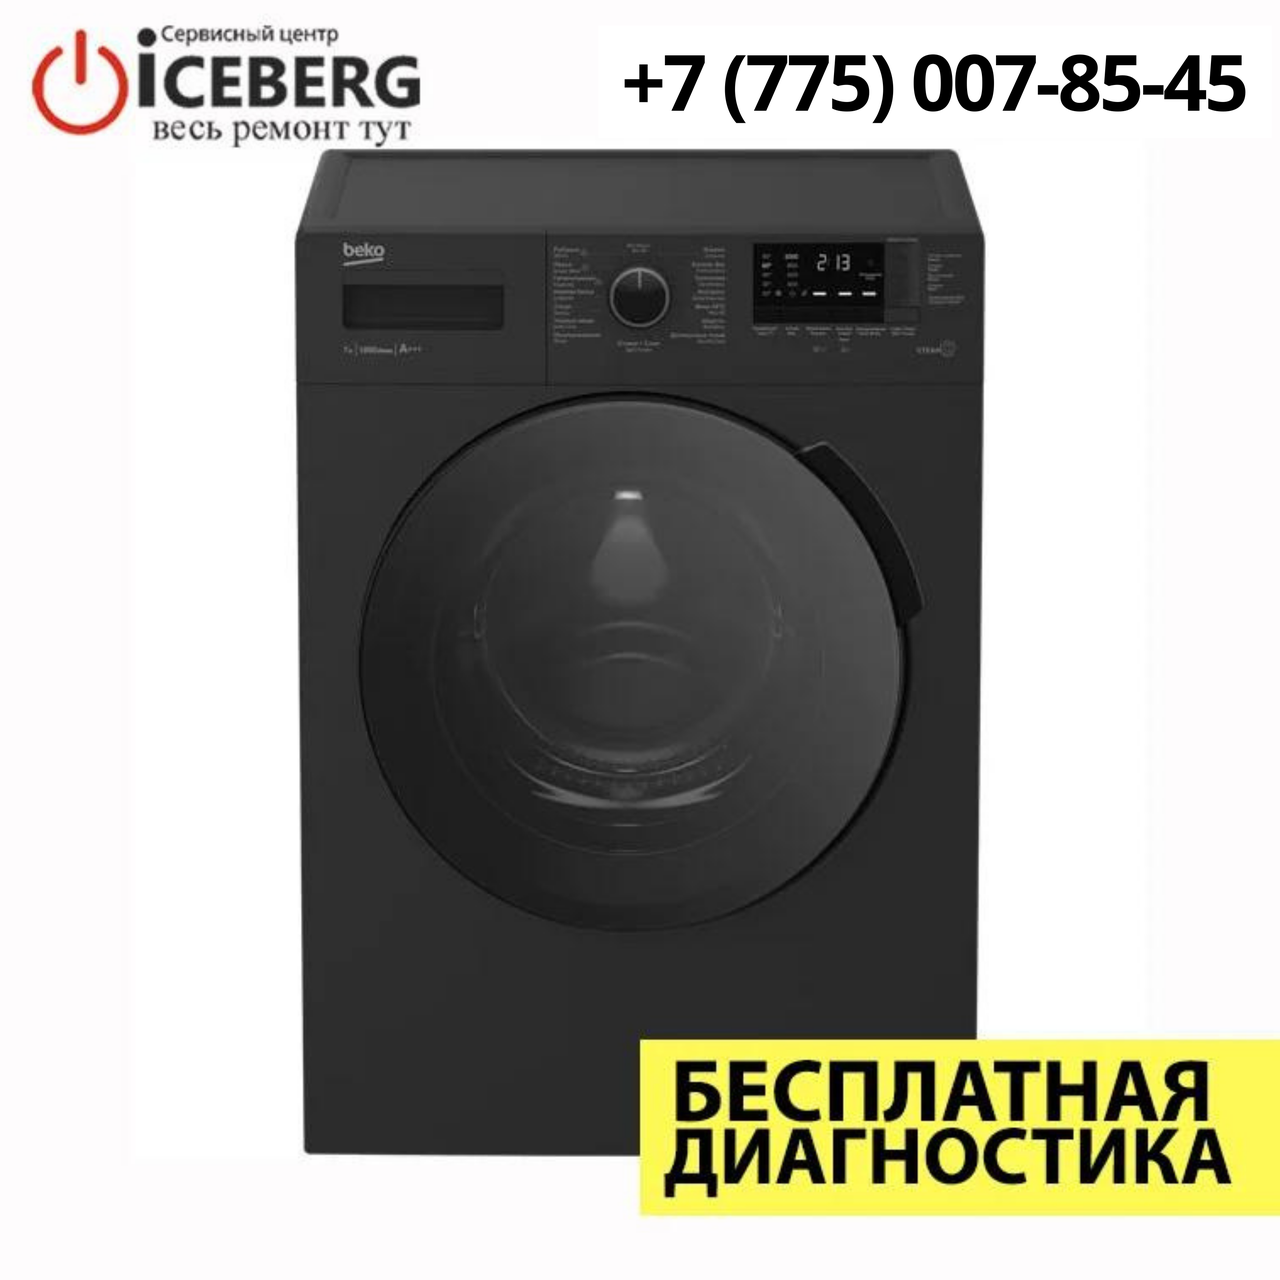 Ремонт стиральных машин BEKO в Алматы